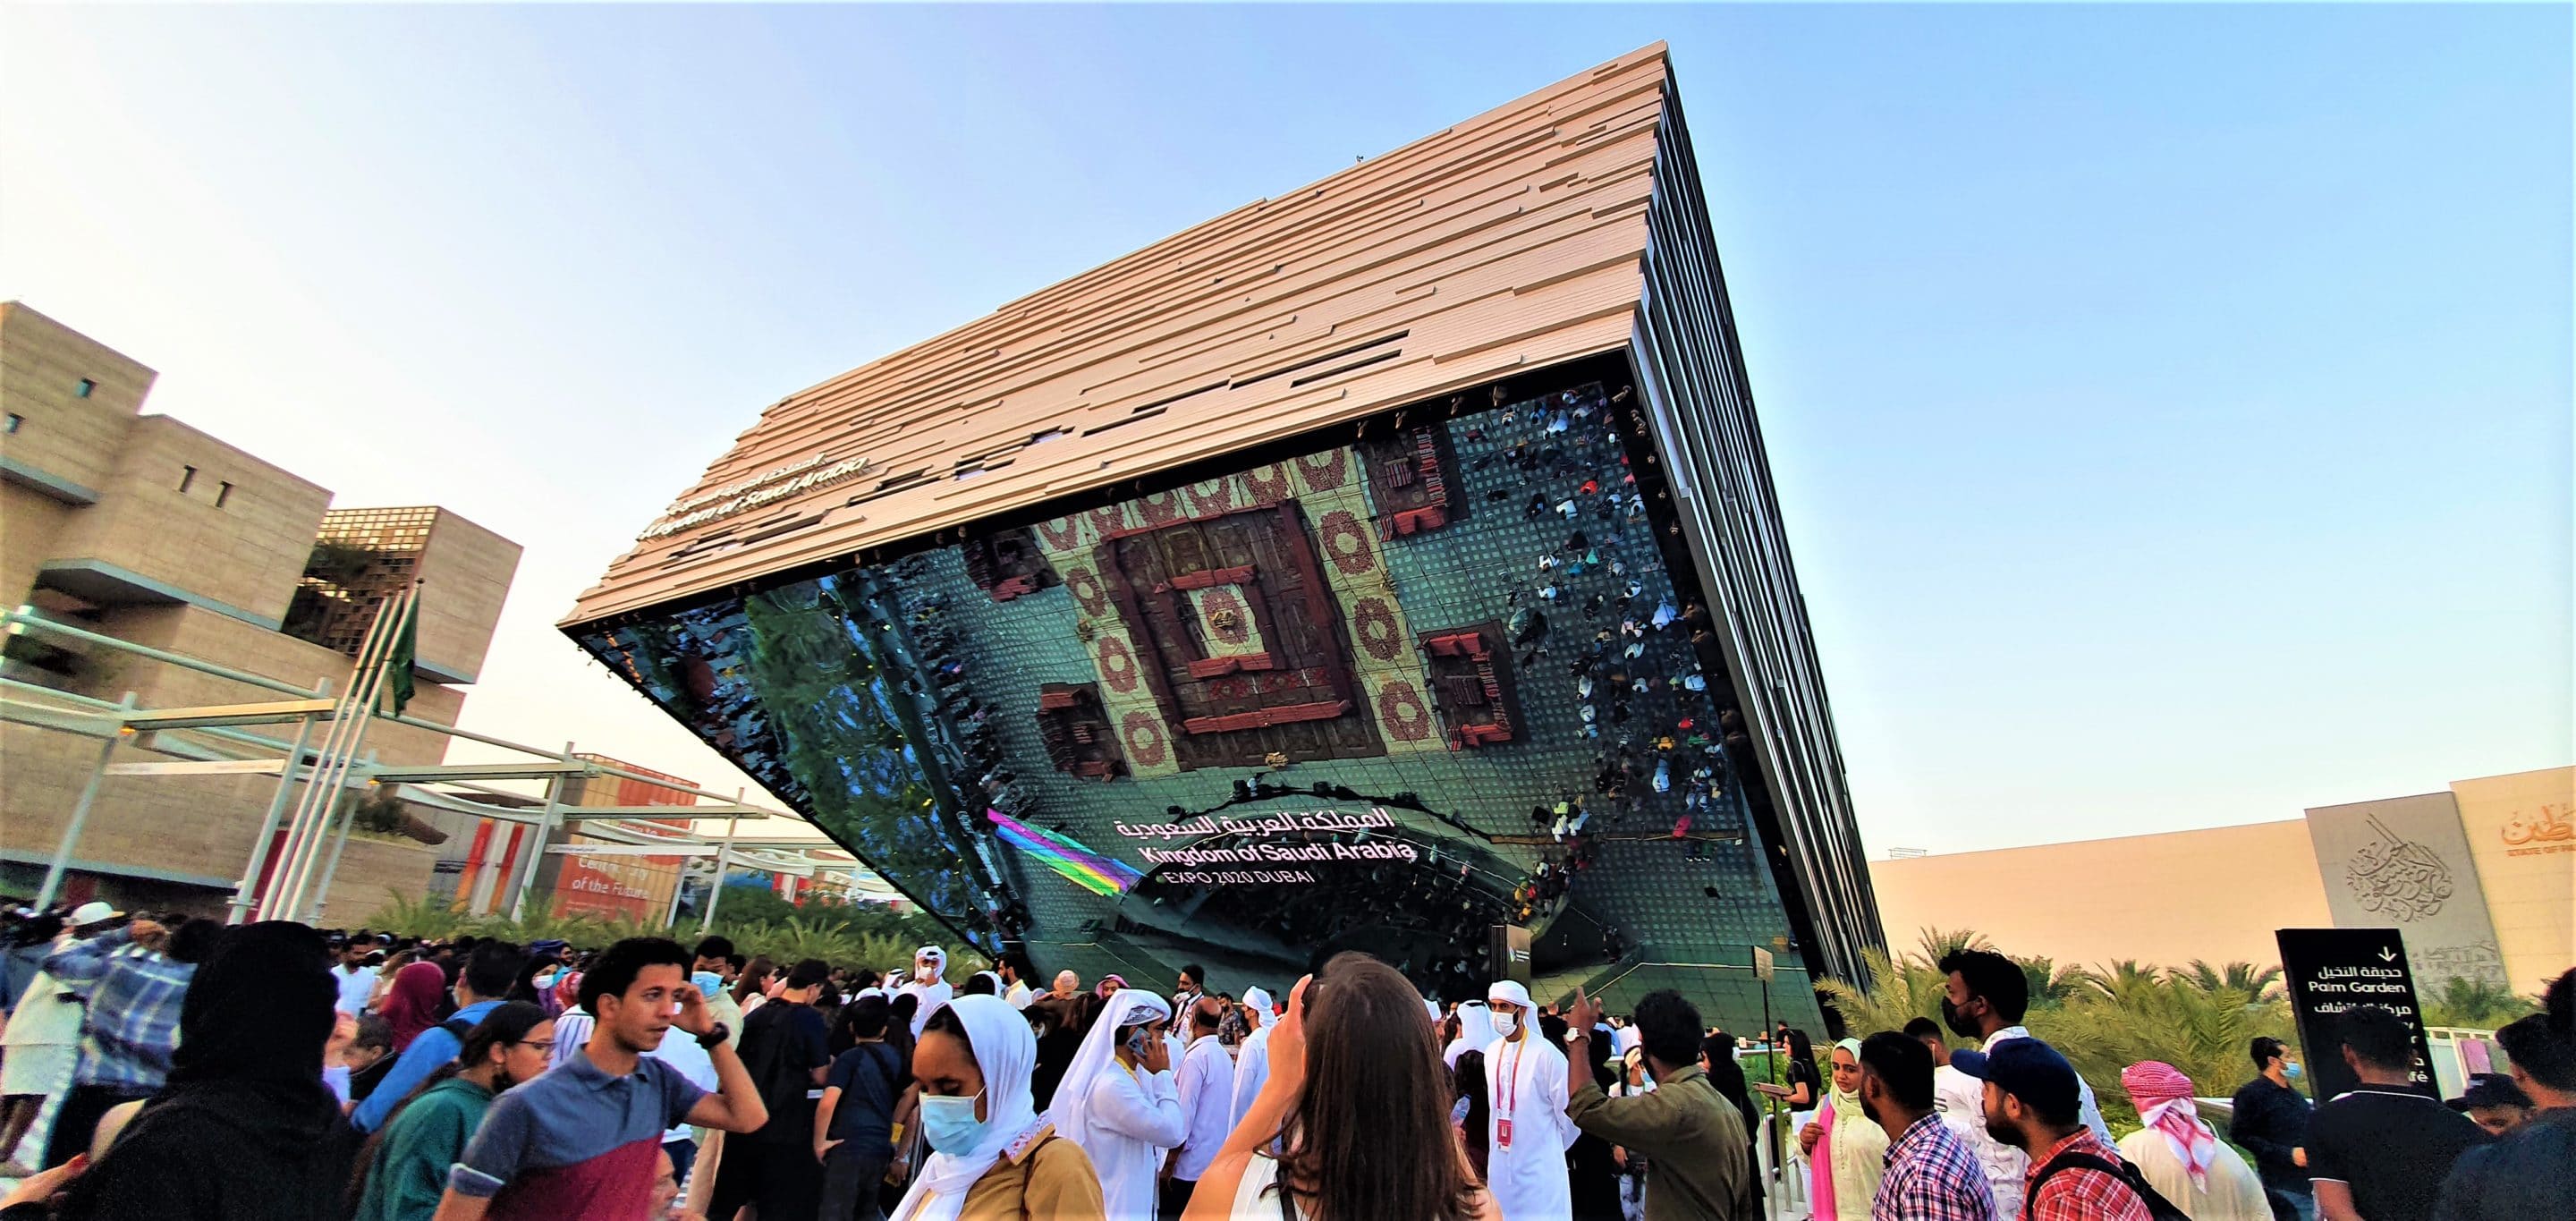 Objectif EXPO 2030 pour l’Arabie Saoudite